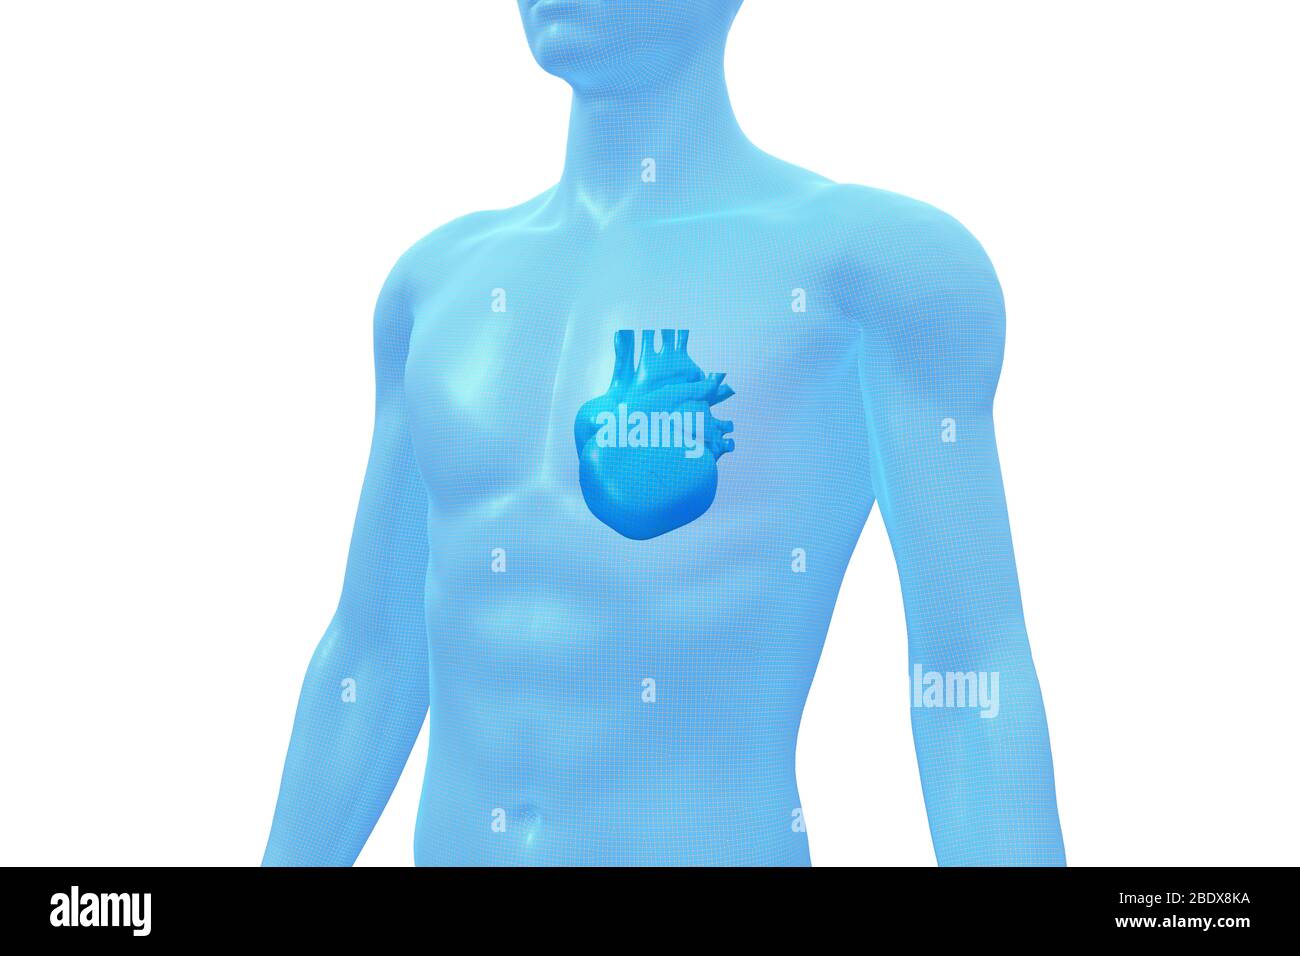 Herz, menschliches Körperorgan, medizinisches 3D-Modell Stockfoto